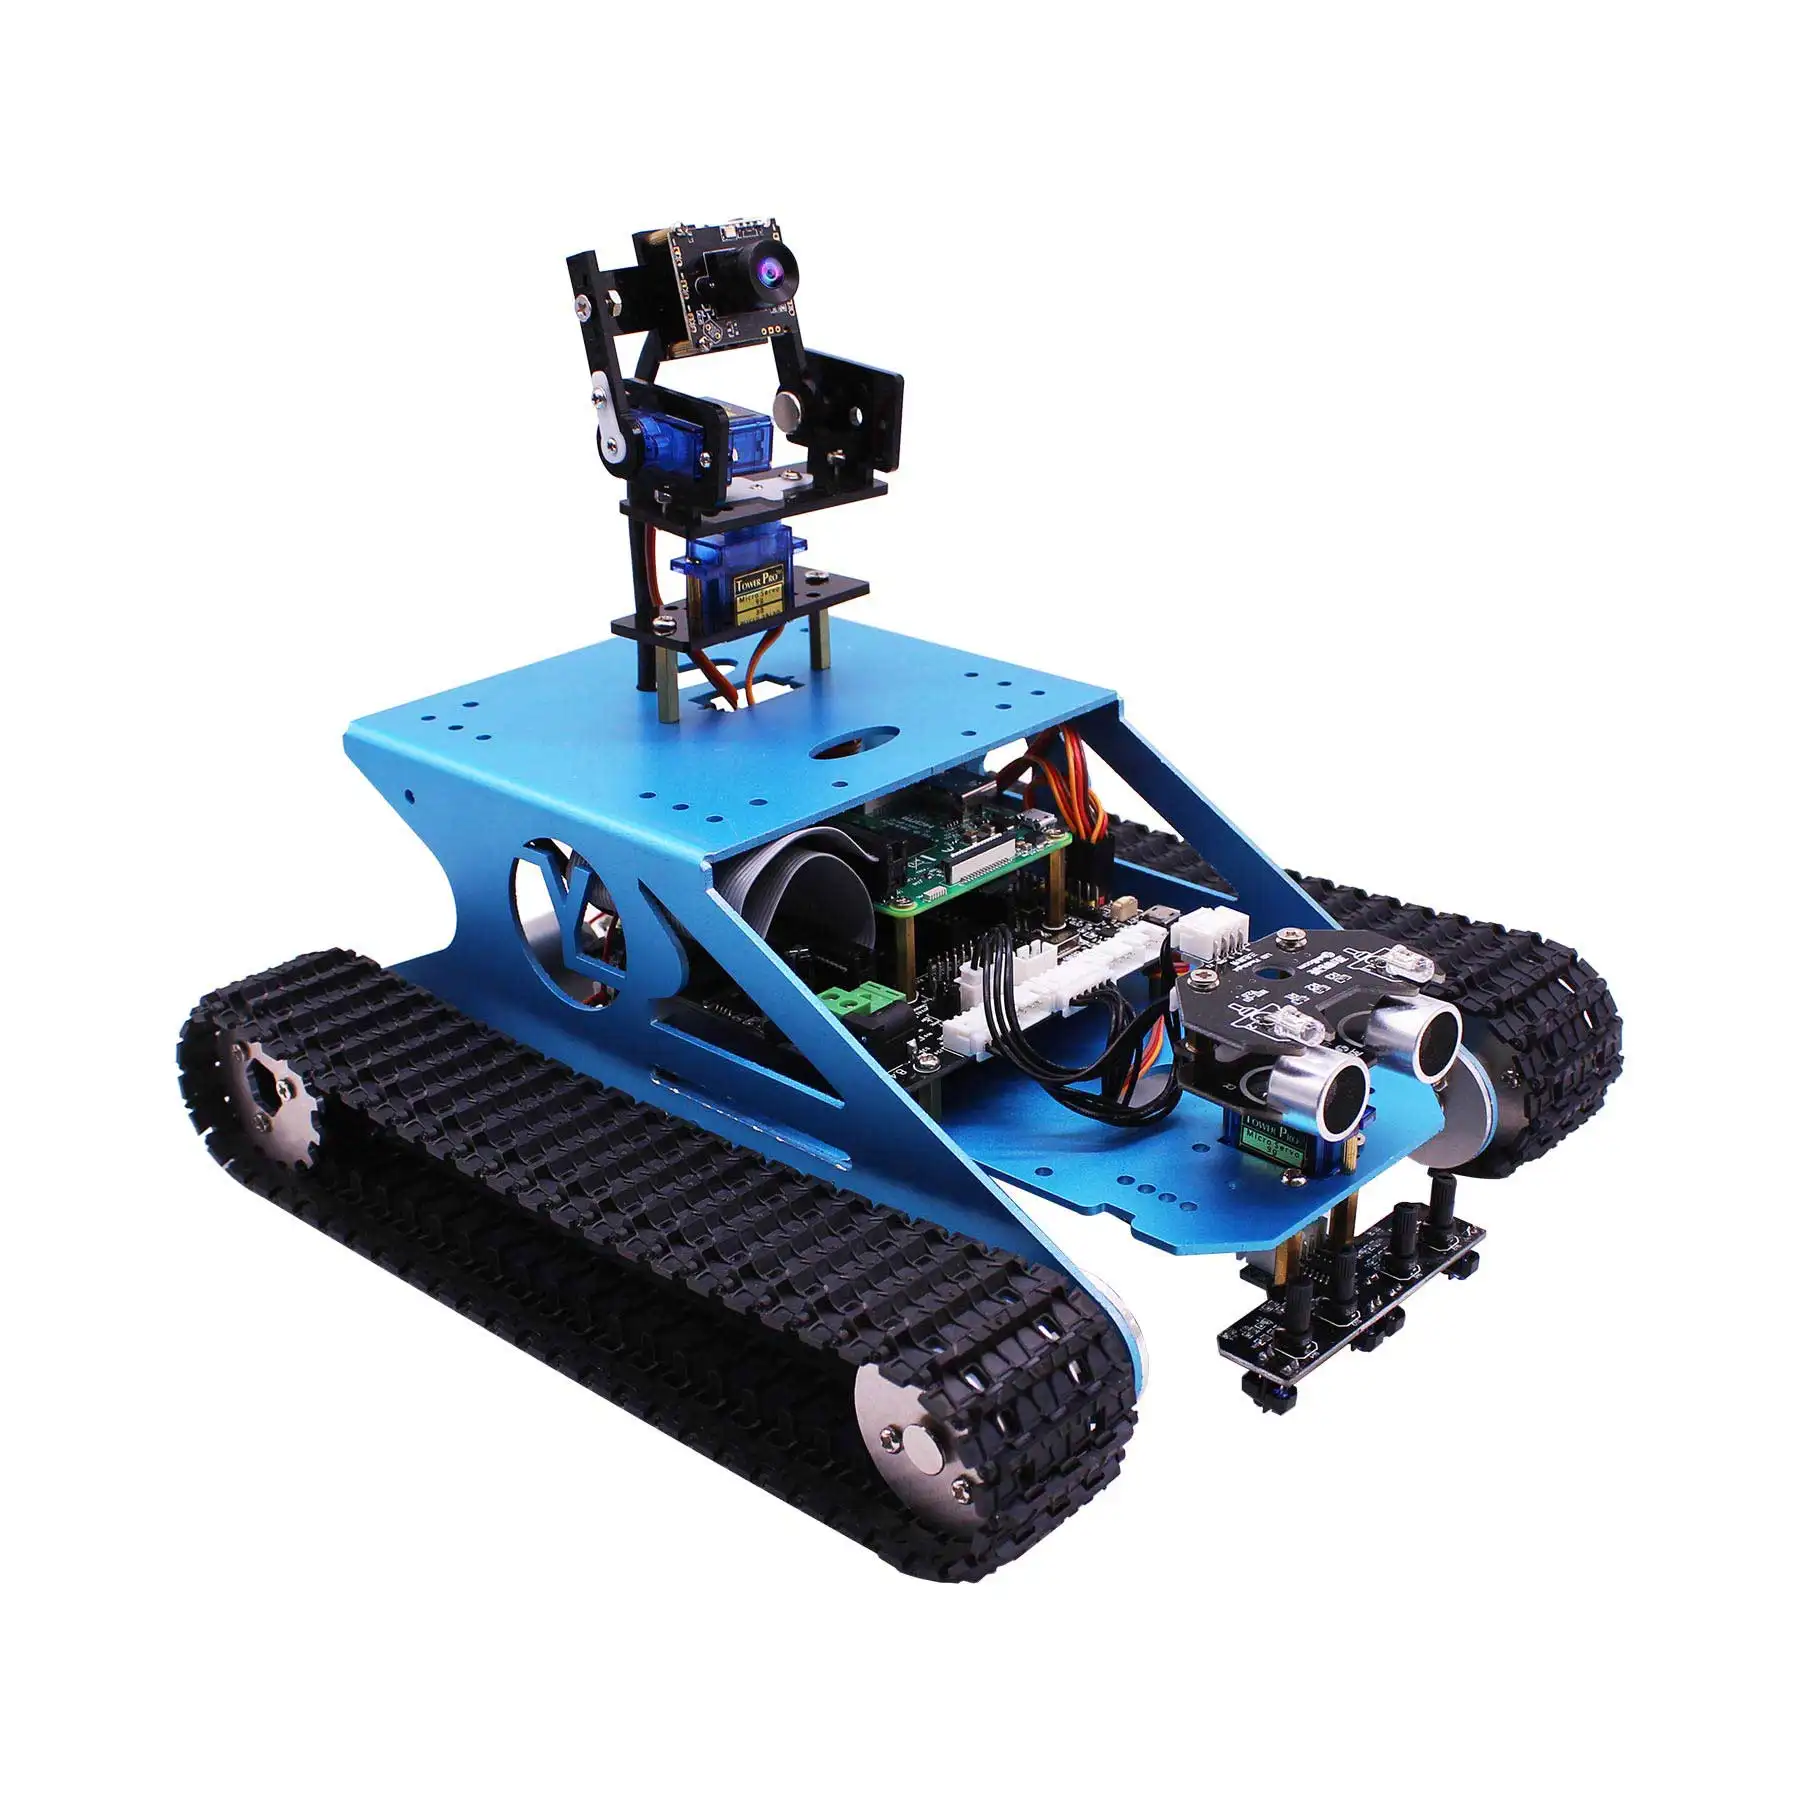 Yahboom G1 AI vizyon akıllı tankı Robot kiti WiFi video kamera ve çoklu AI fonksiyonları ile ahududu Pi 4B için tasarım